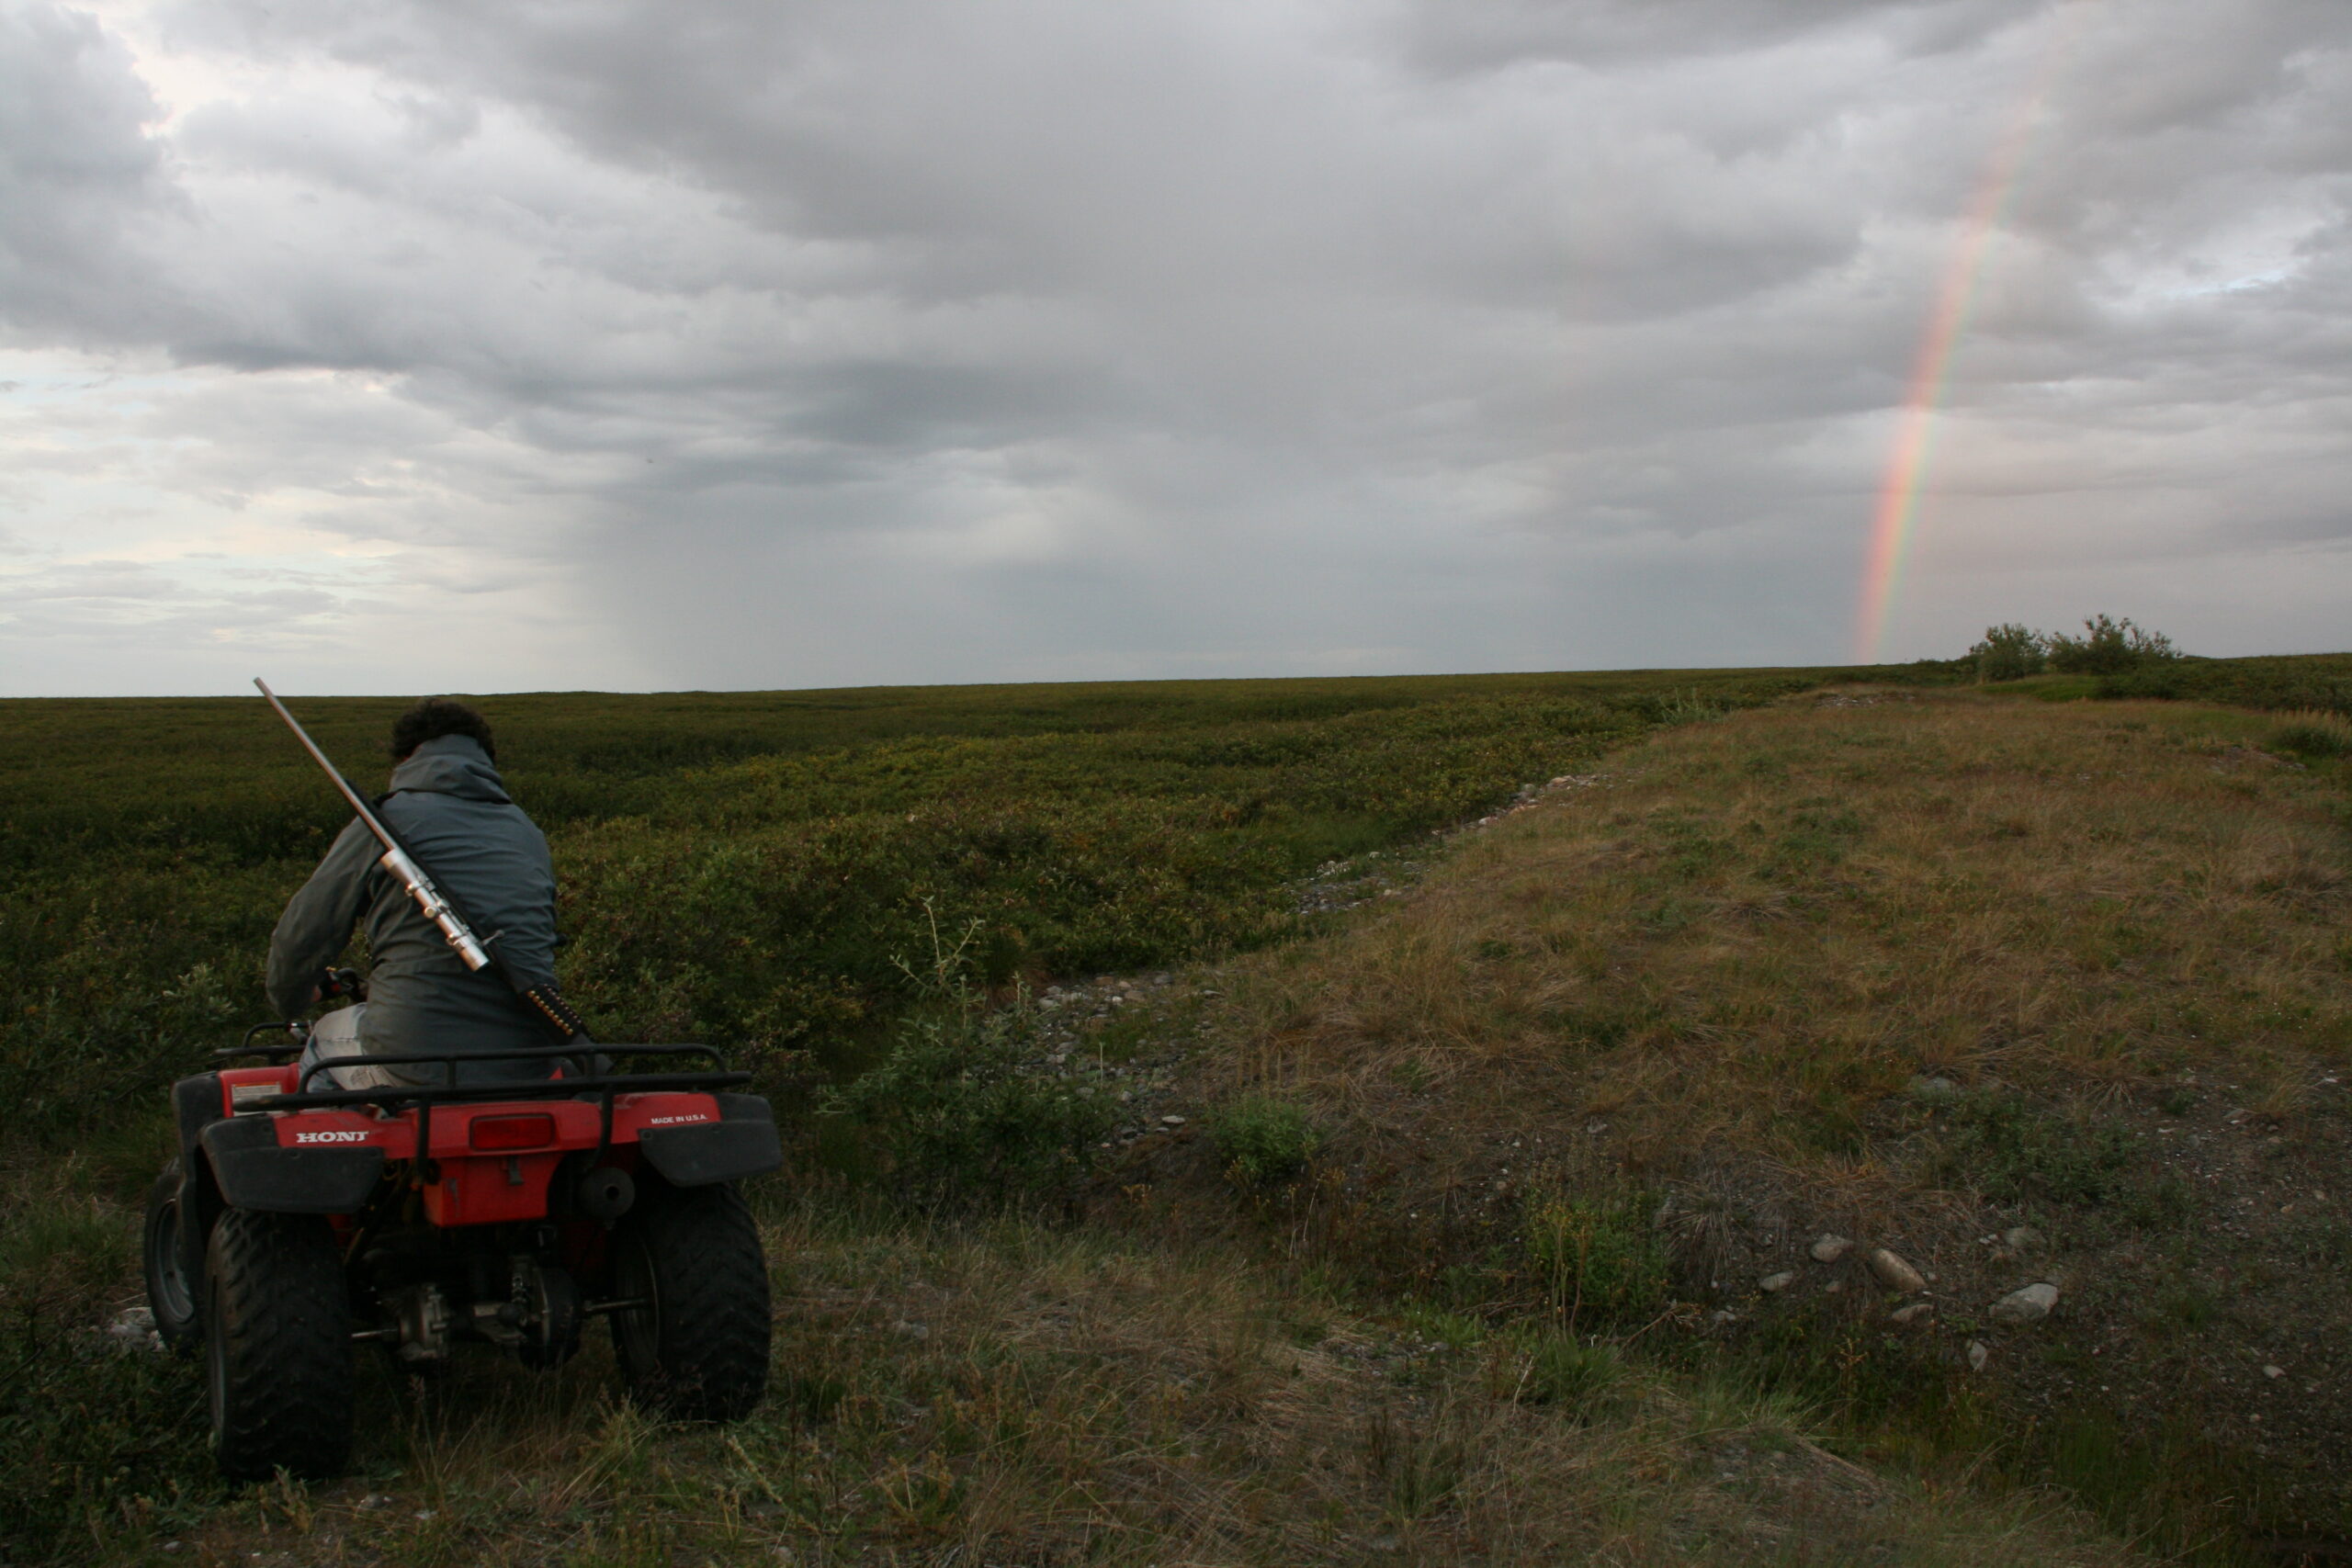 A rainbow appears in the arctic sky above an ATV.